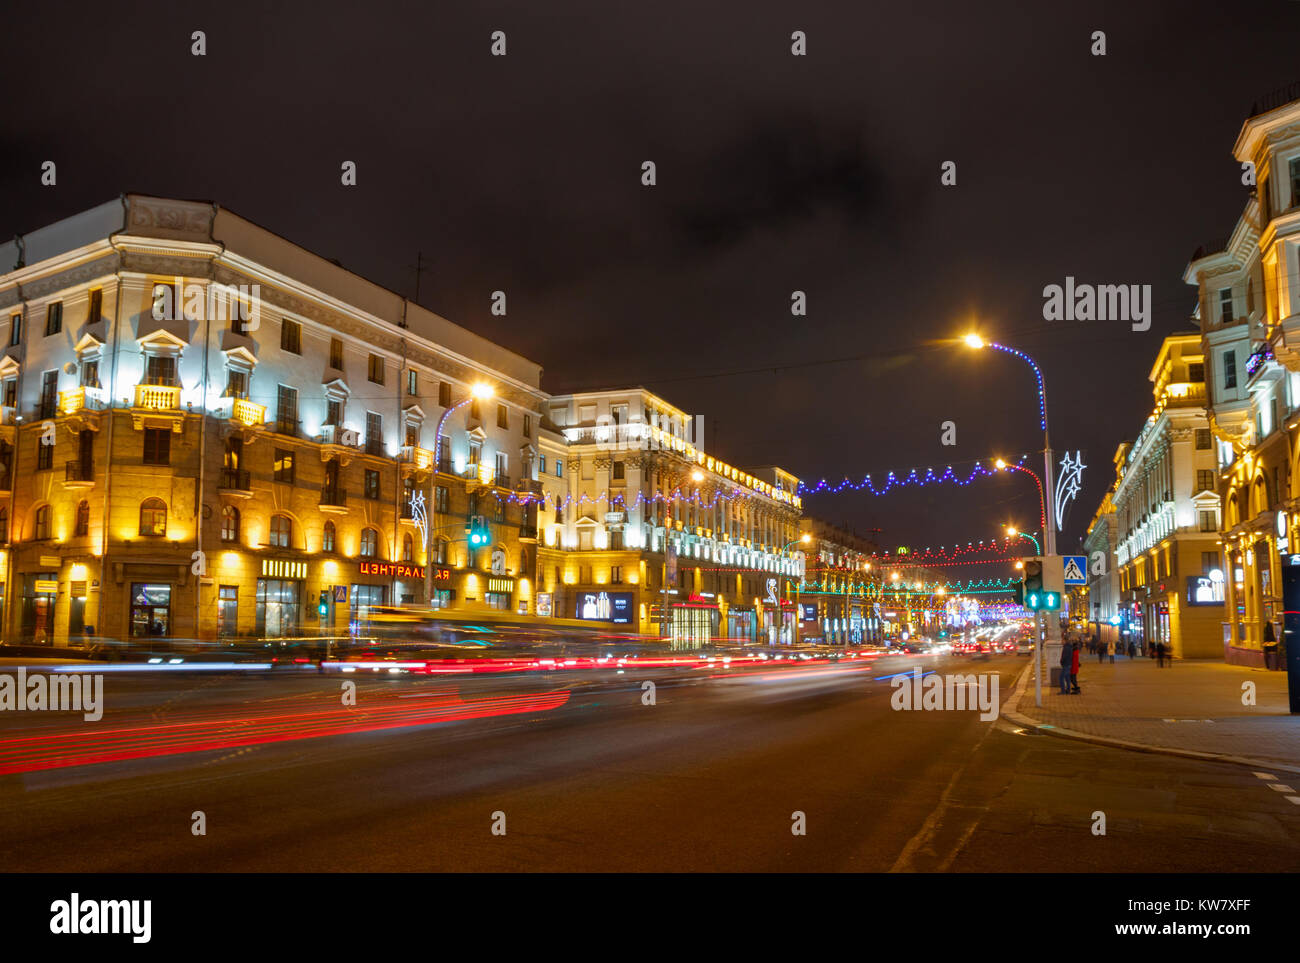 Nezavisimosti Prospekt in una delle strade principali di Minsk con il traffico intenso, facciate illuminate, allegro e luci di Natale decorazione ad una sera di Natale Foto Stock